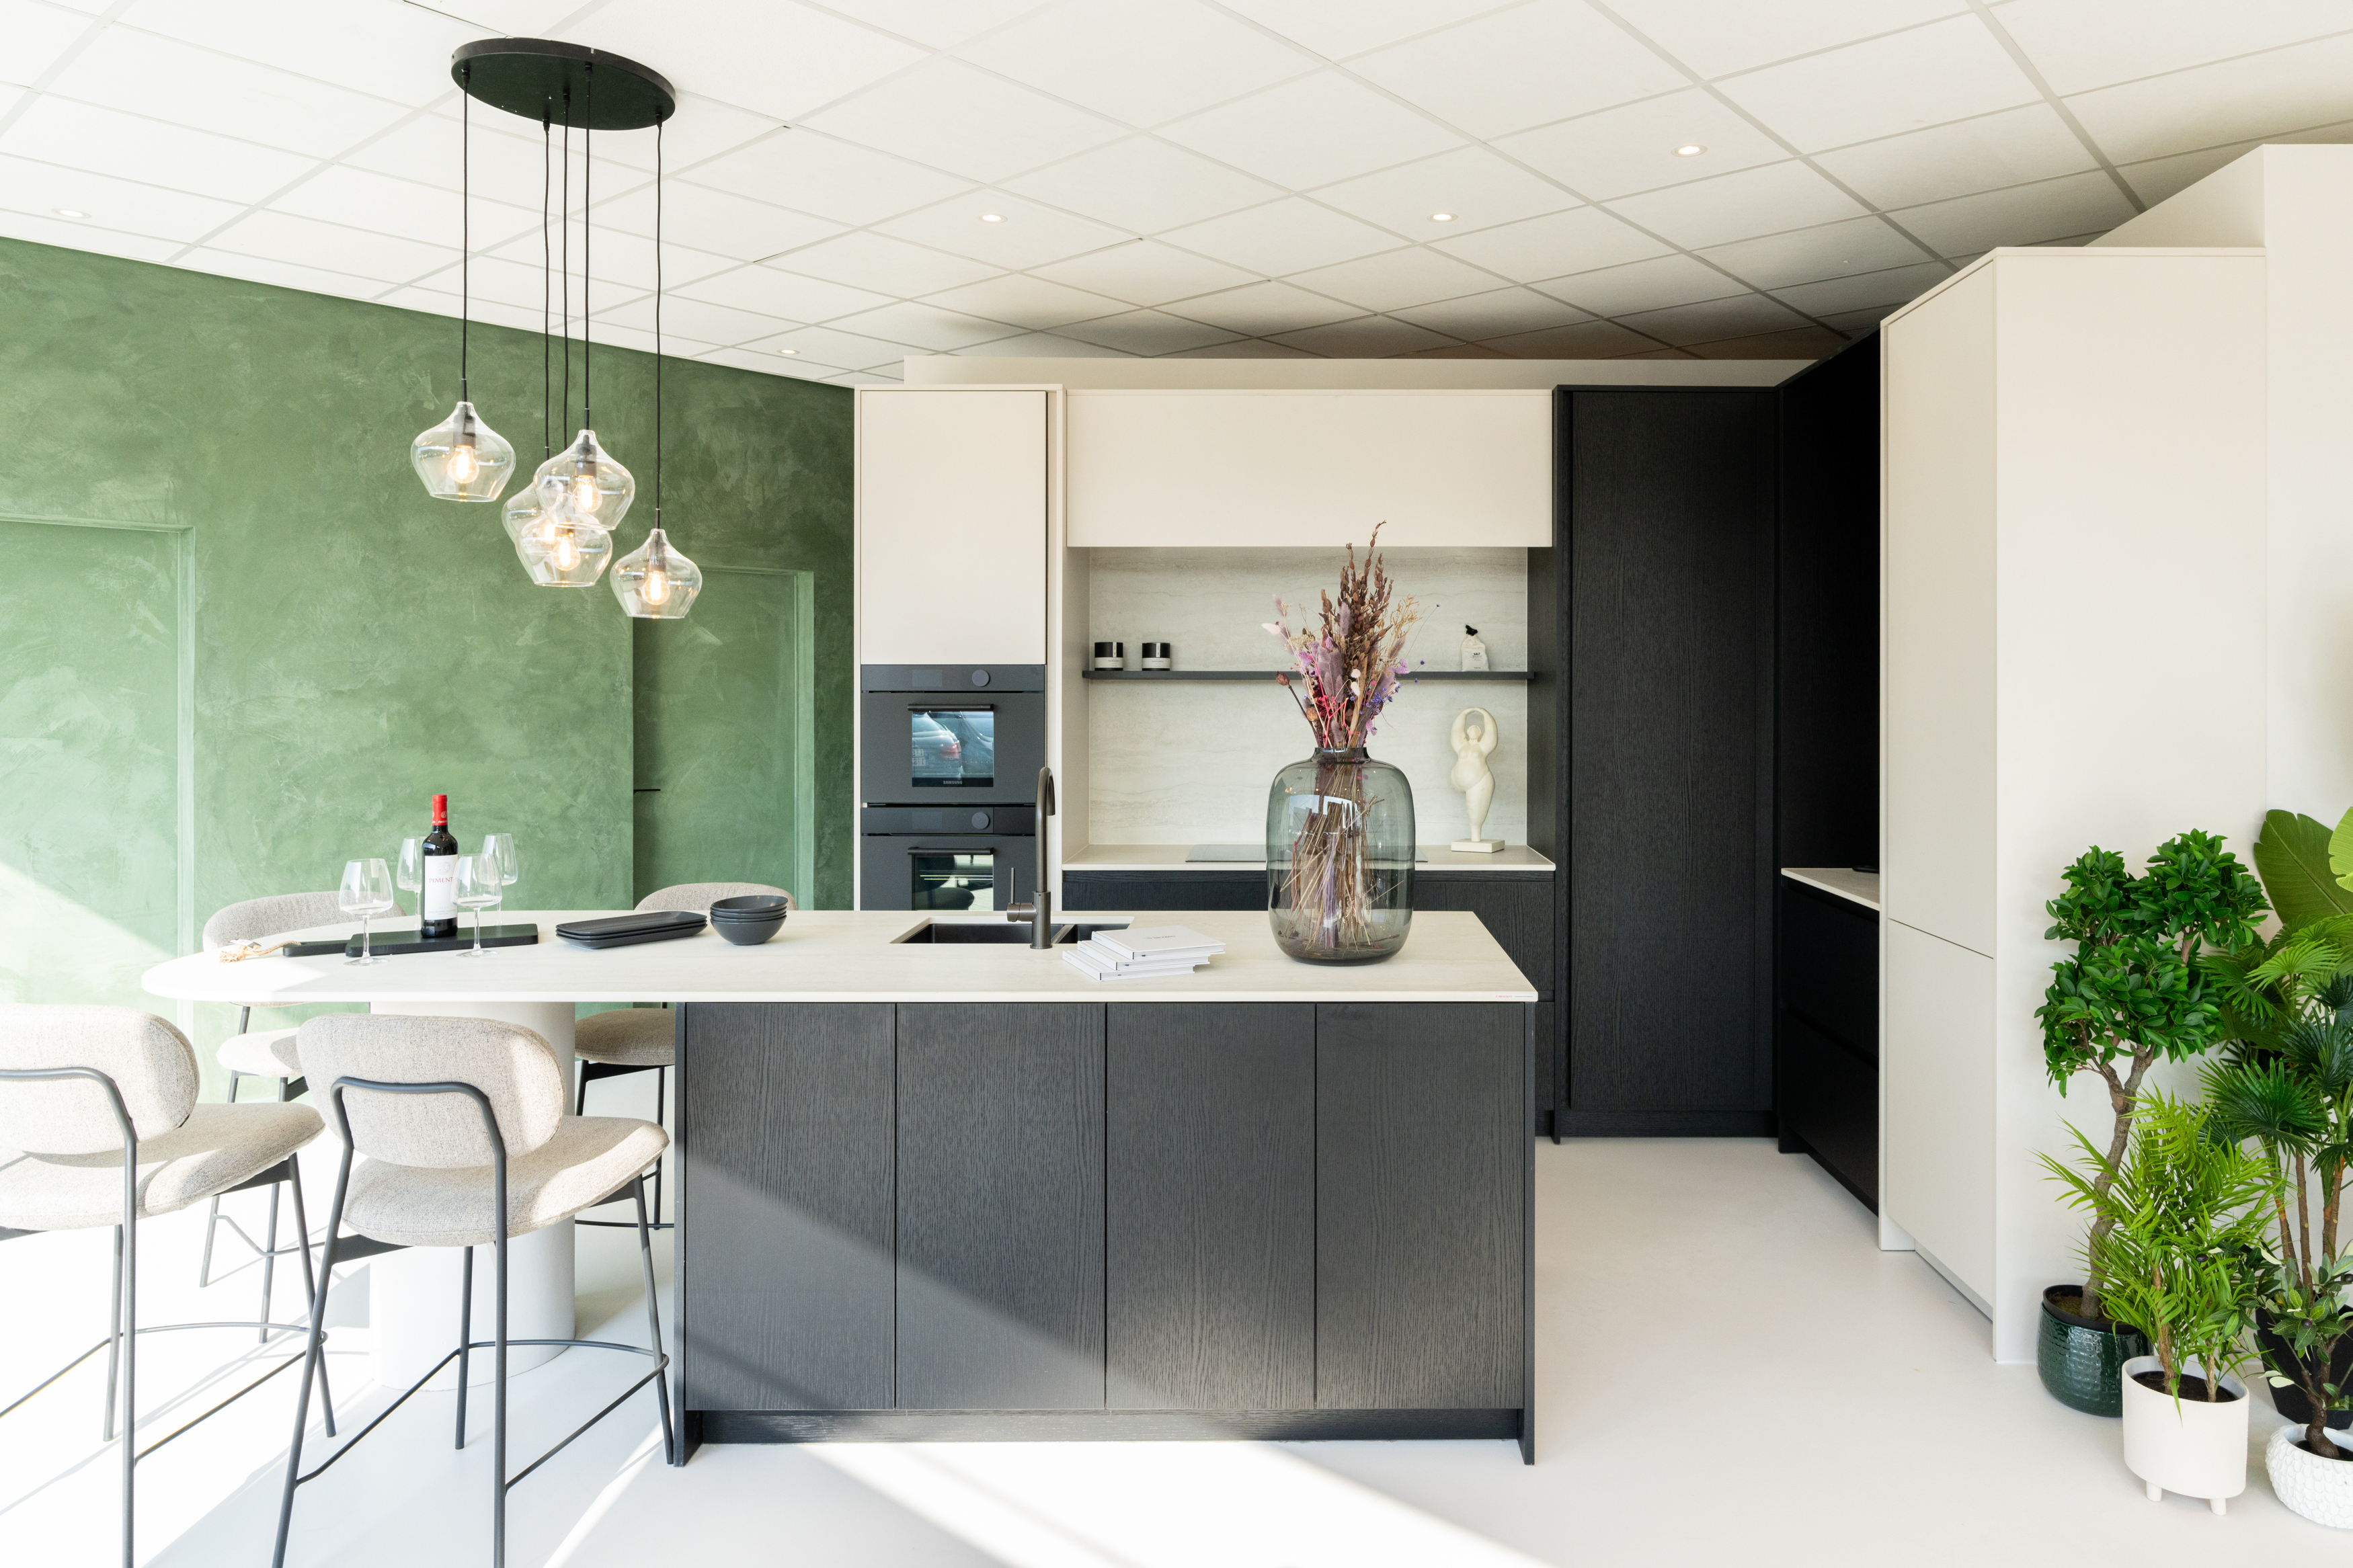 Moderne greeploze keuken met afgerond keramisch werkblad